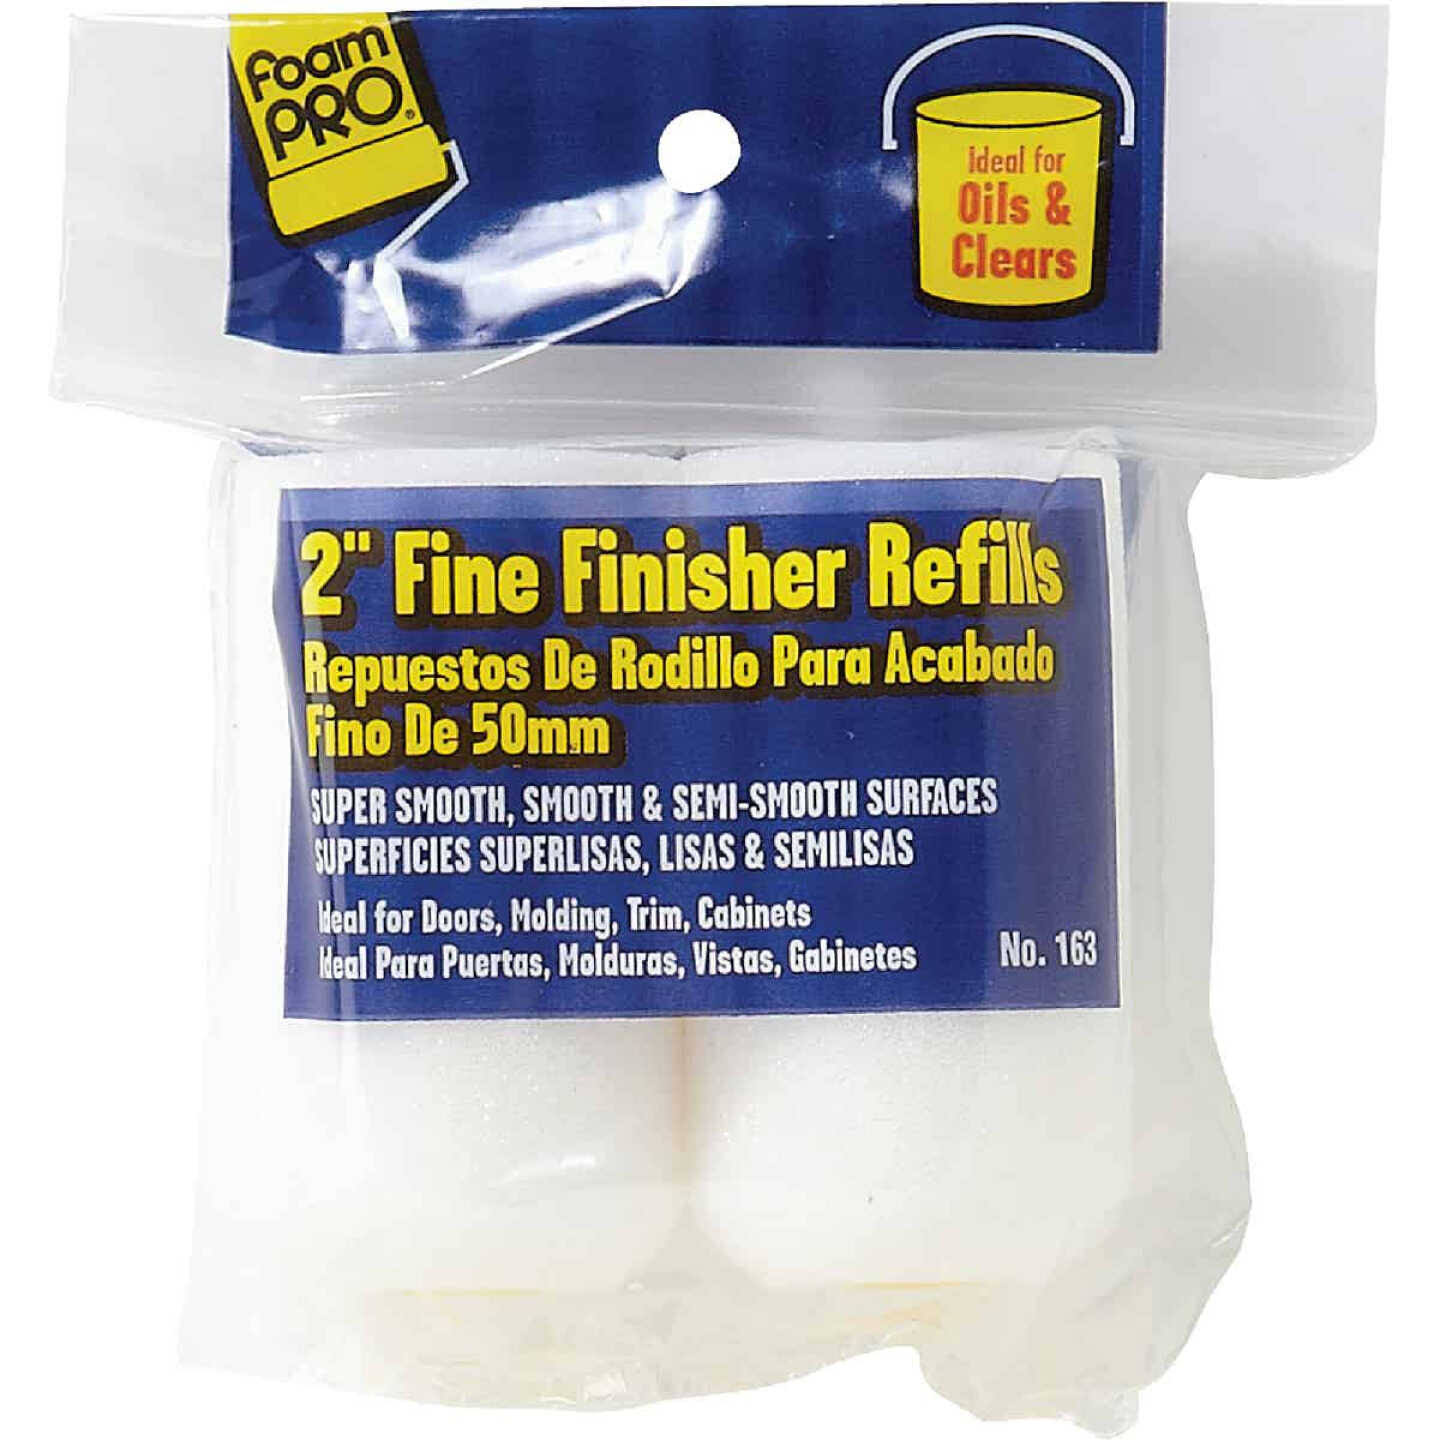 Foam Pro Fine Finisher Refills - 2 Pack, 2"